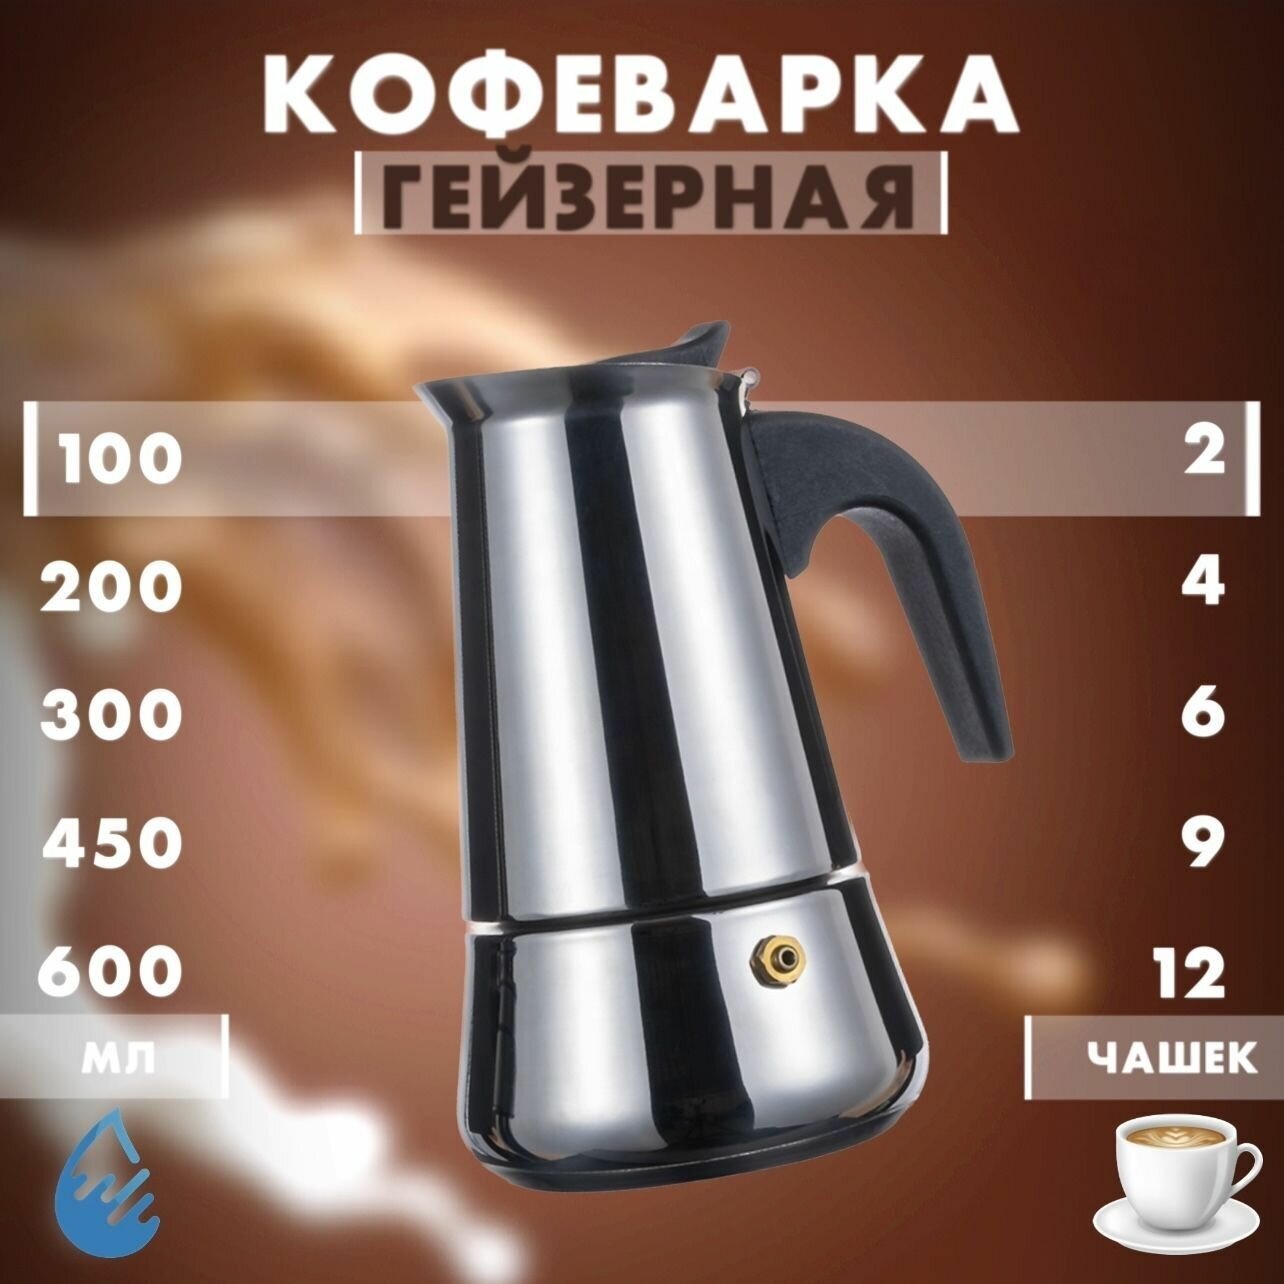 Кофеварка гейзерная для плиты/ESPRESSO MAKER/Турка для кухни 2 чашки 100 мл